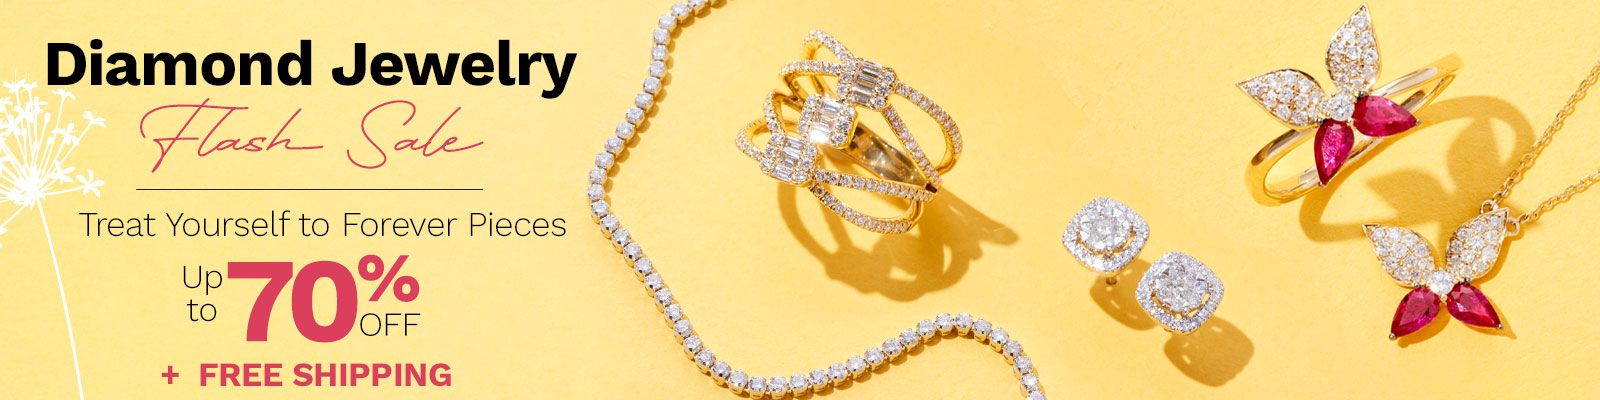 Diamond Jewelry Flash Sale 207-024, 207-029, 206-198, 207-025, 207-023